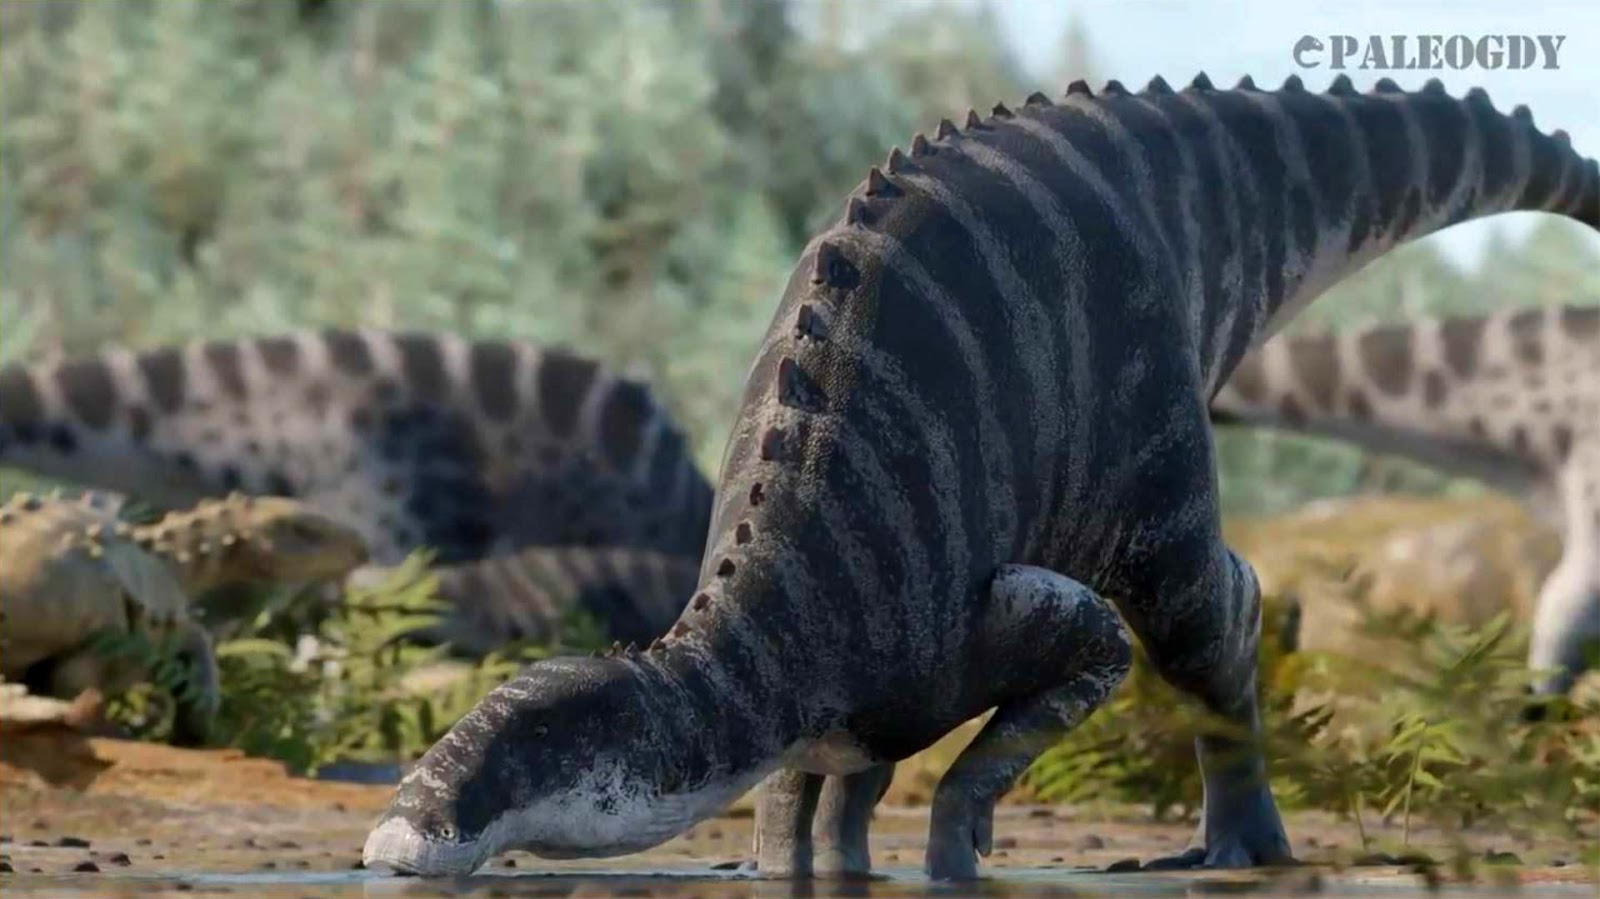 Καλλιτεχνική απεικόνιση του νέου είδους δεινοσαύρων που εντοπίστηκε στην Παταγονία. [Credit: Gabriel Diaz Yantén (Paleogdy)]